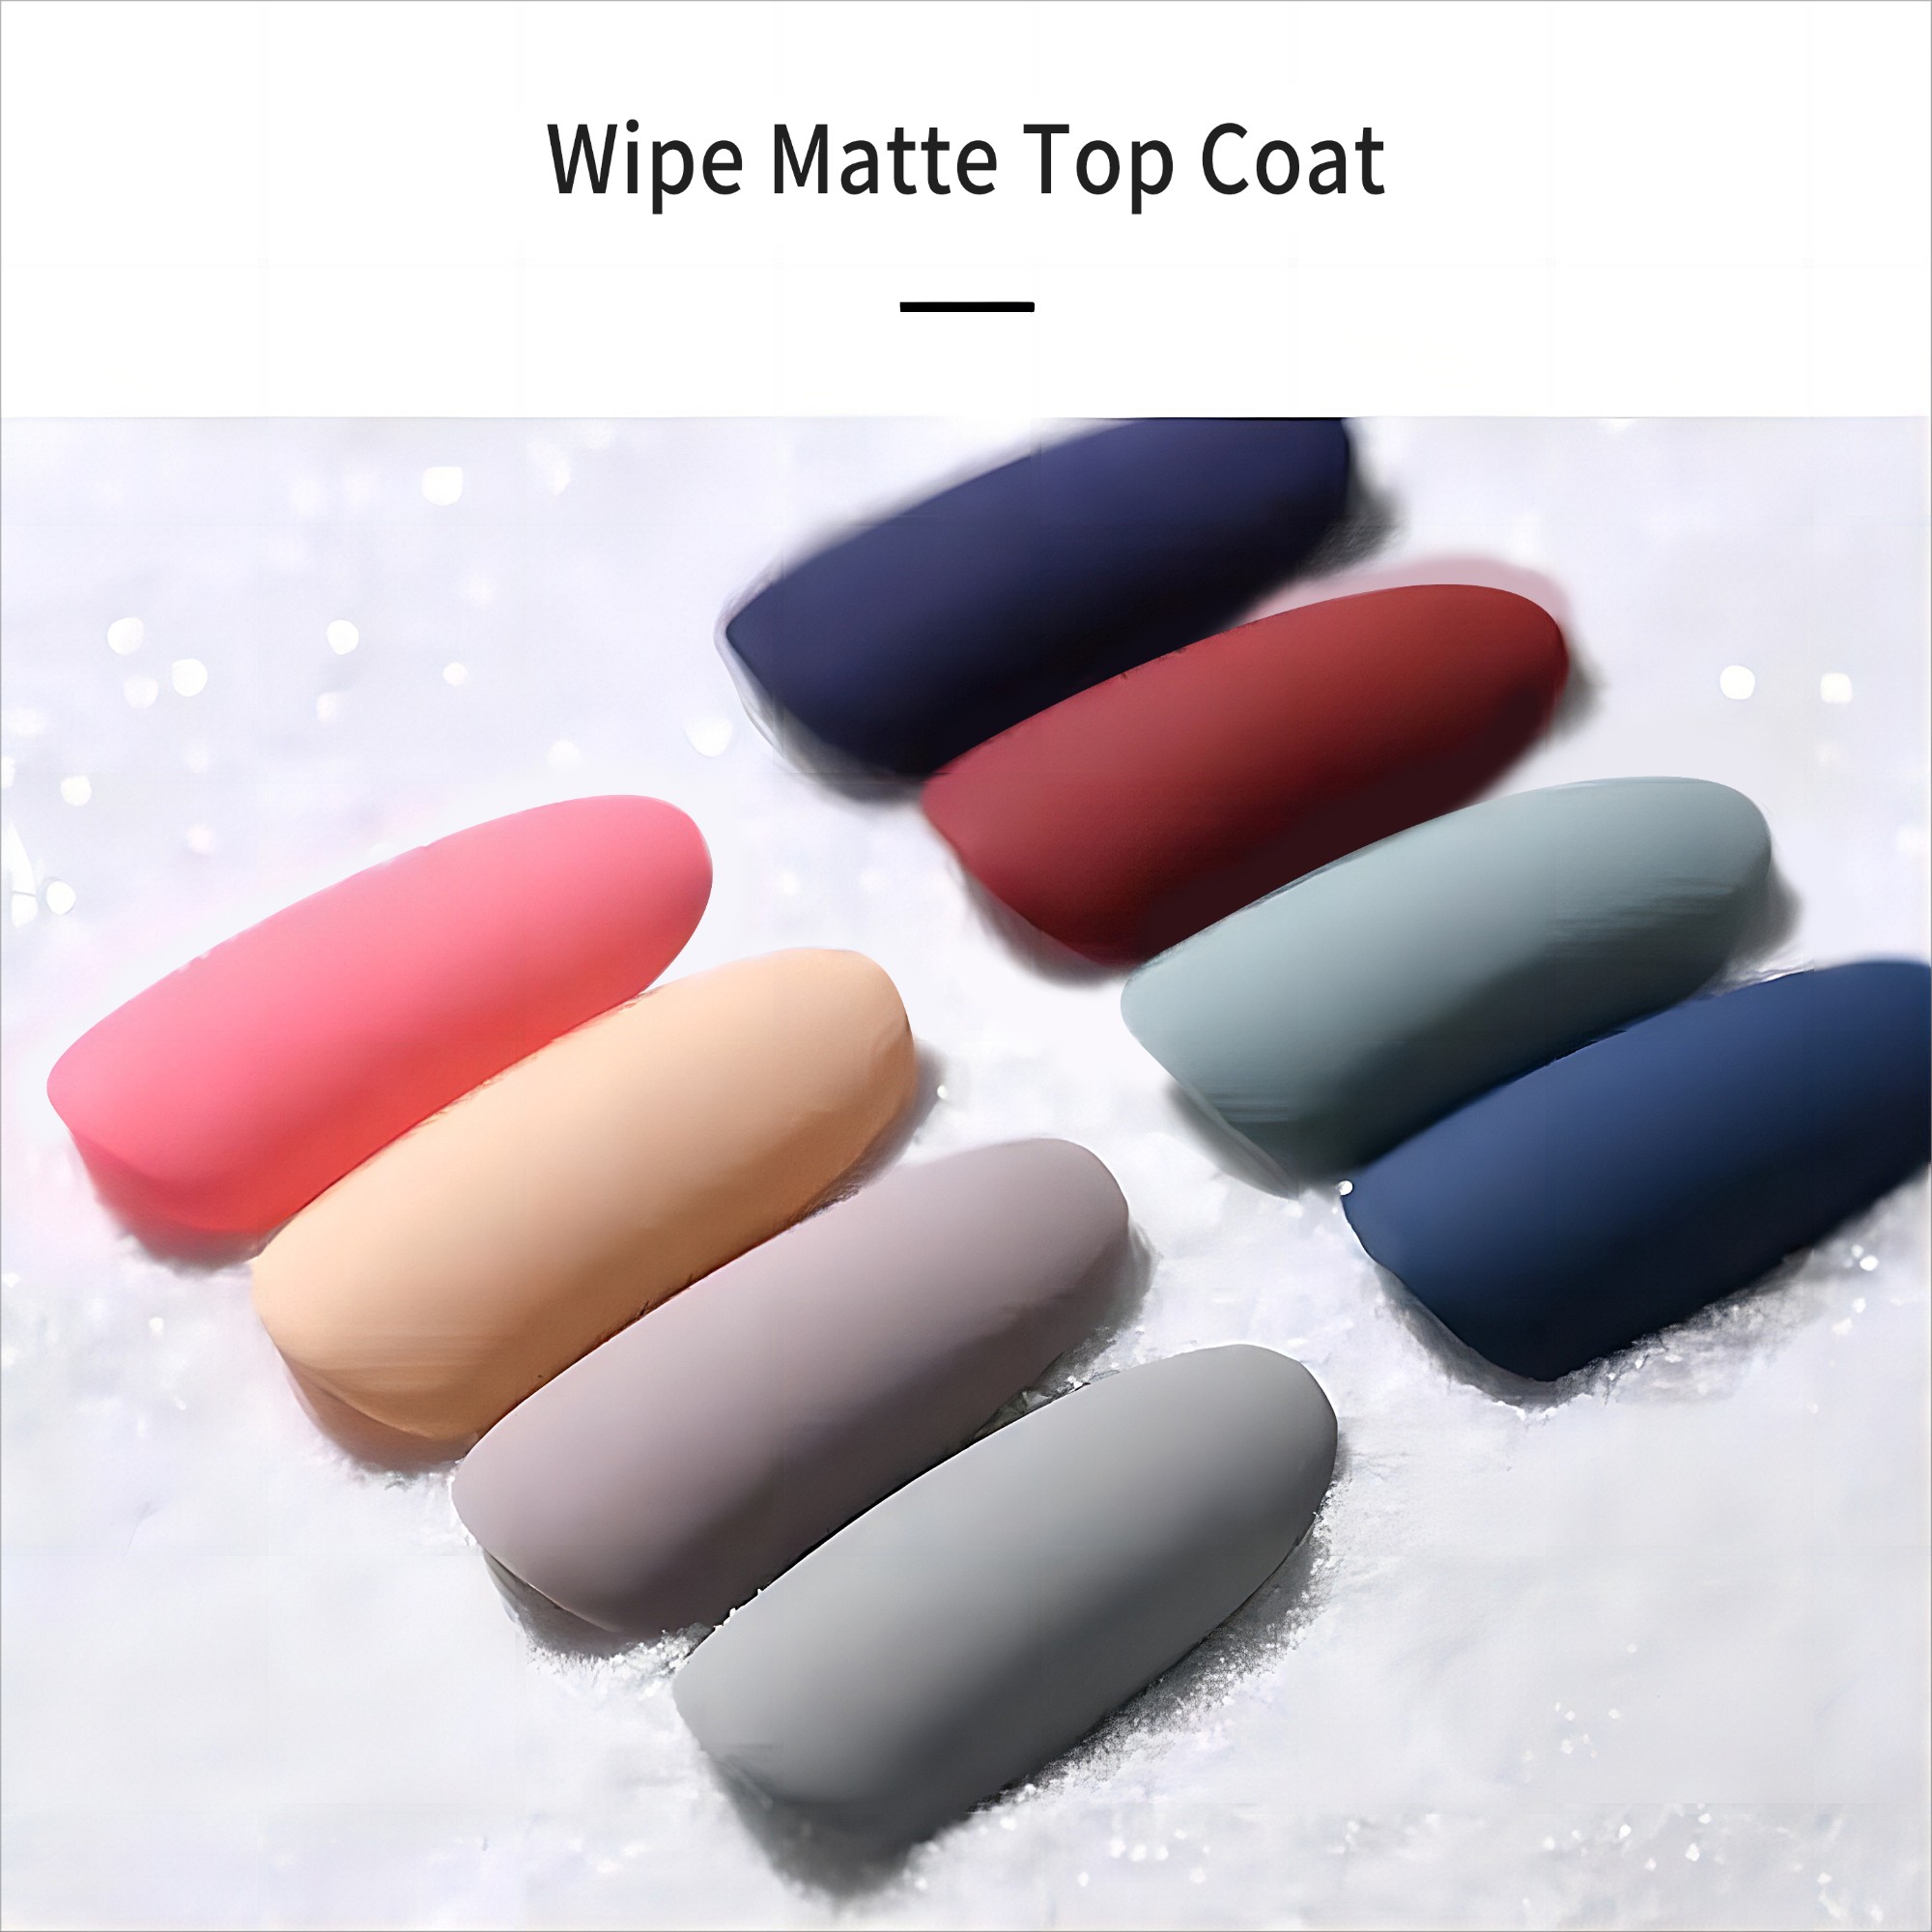 Wipe Matte Top Coat